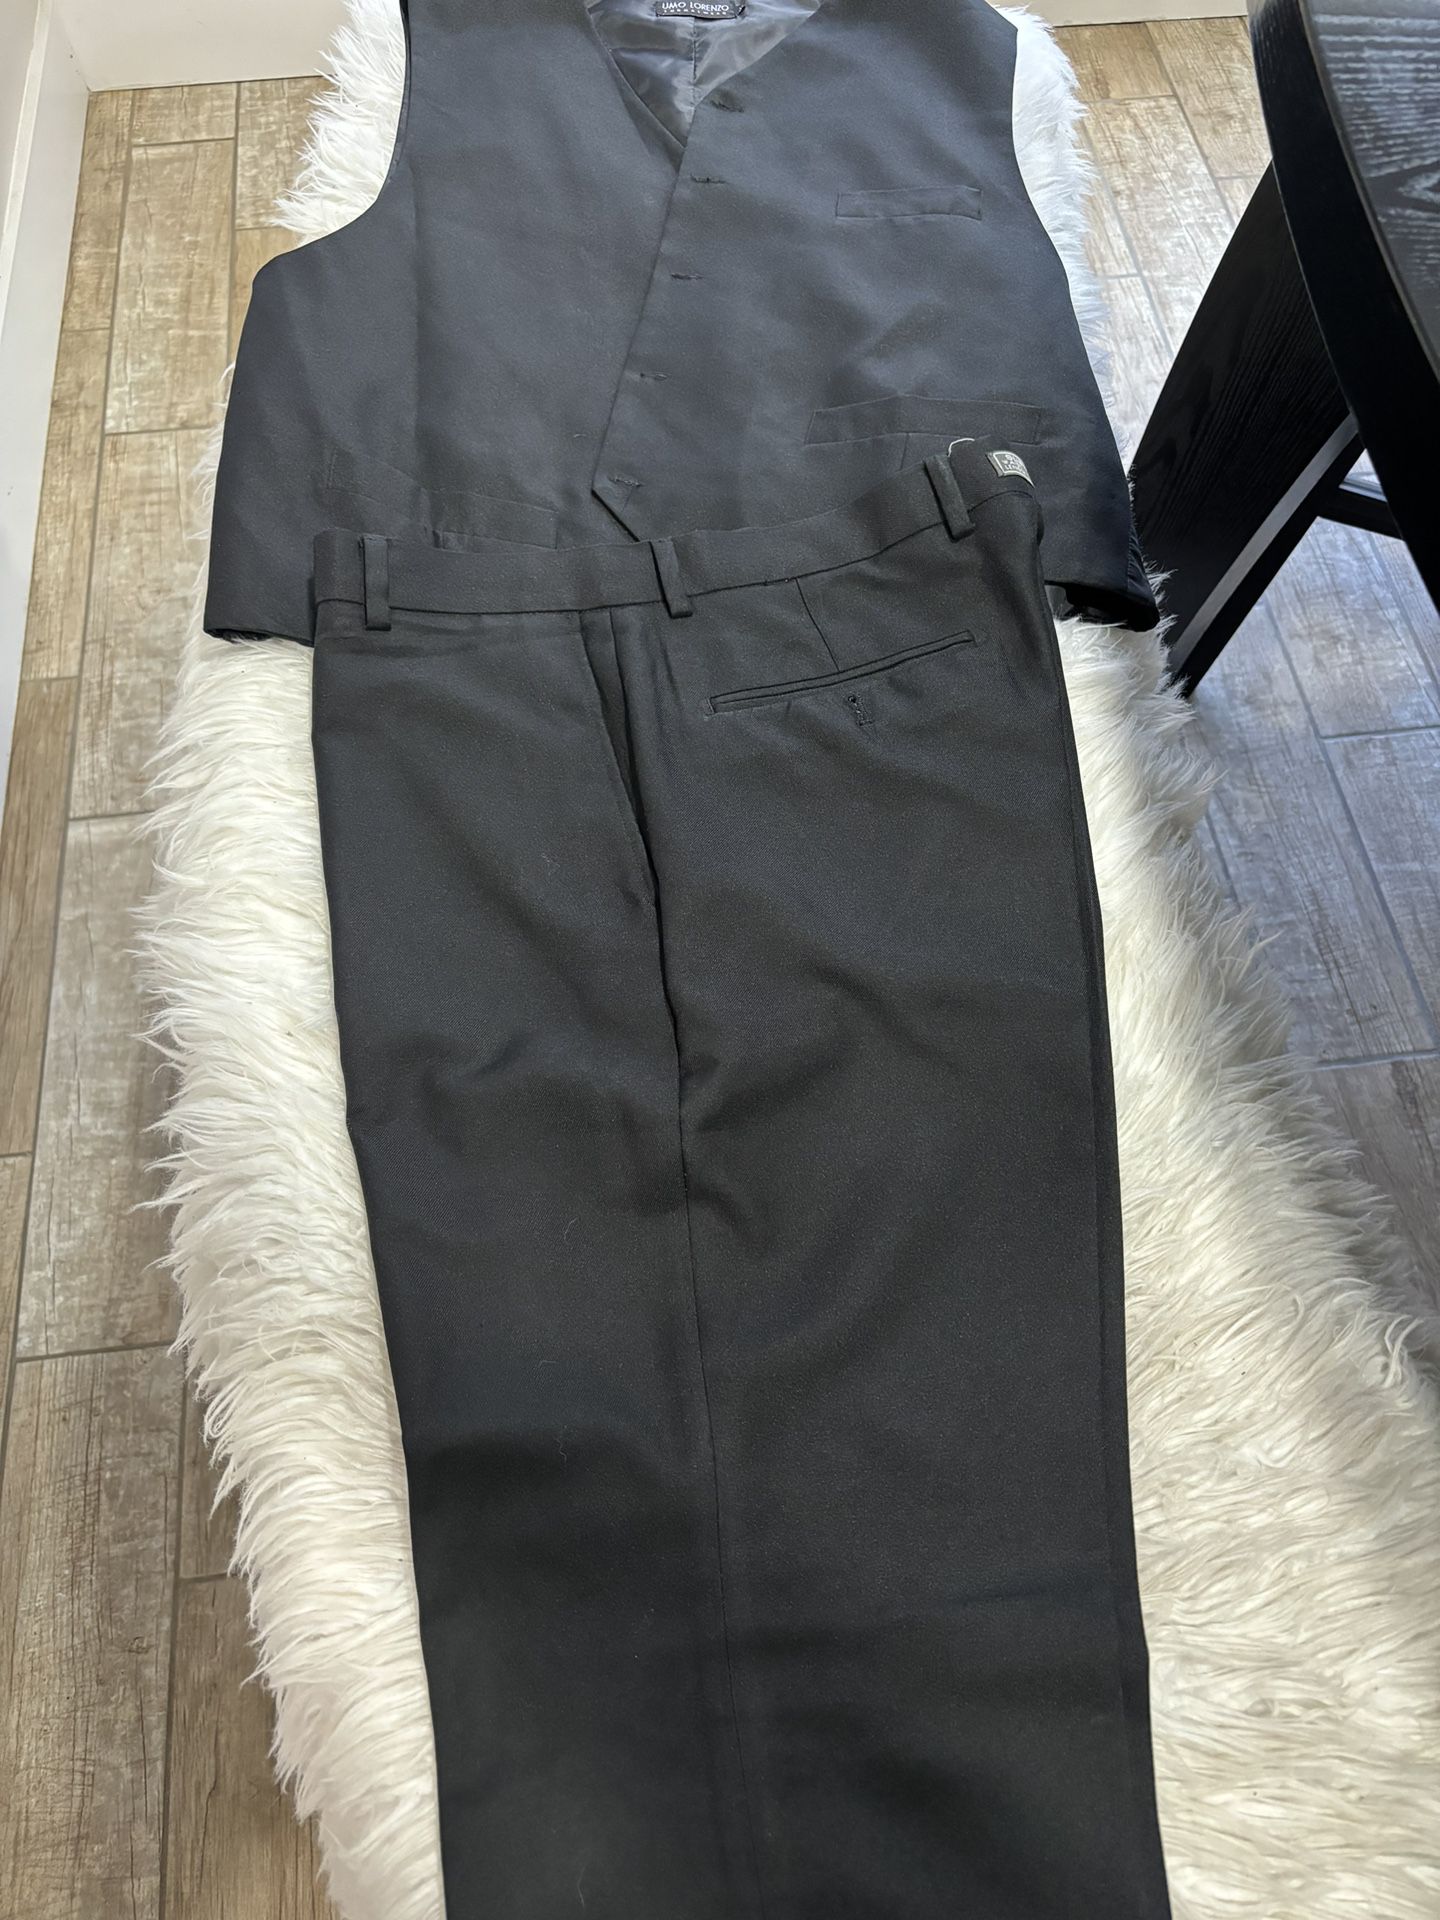 Men’s Black Vest Suit XL